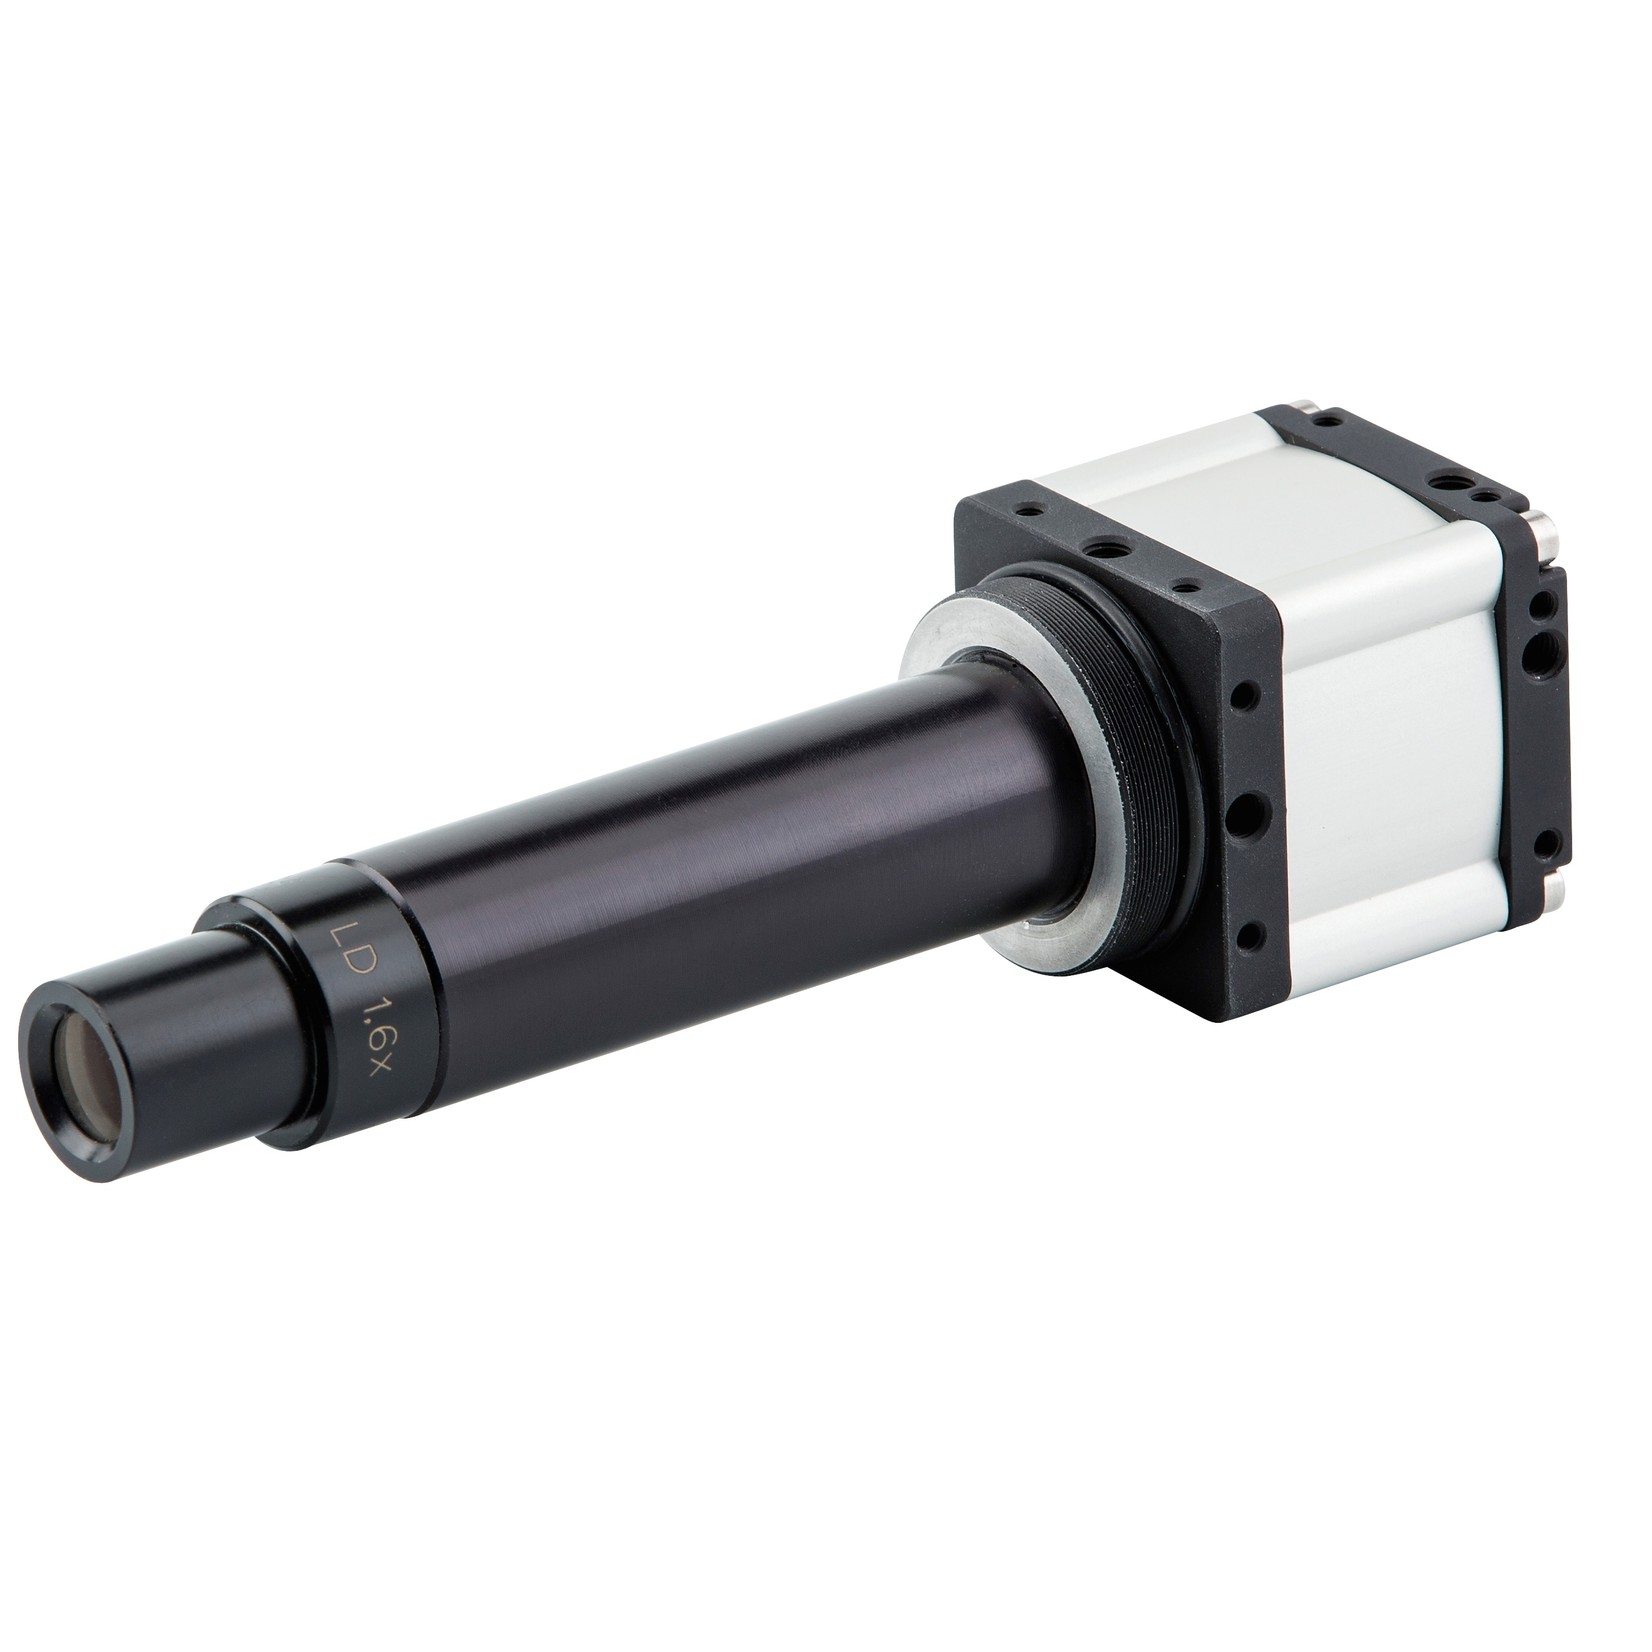 Sistema di telecamere con campo visivo di 10 mm e distanza di lavoro di 185 mm